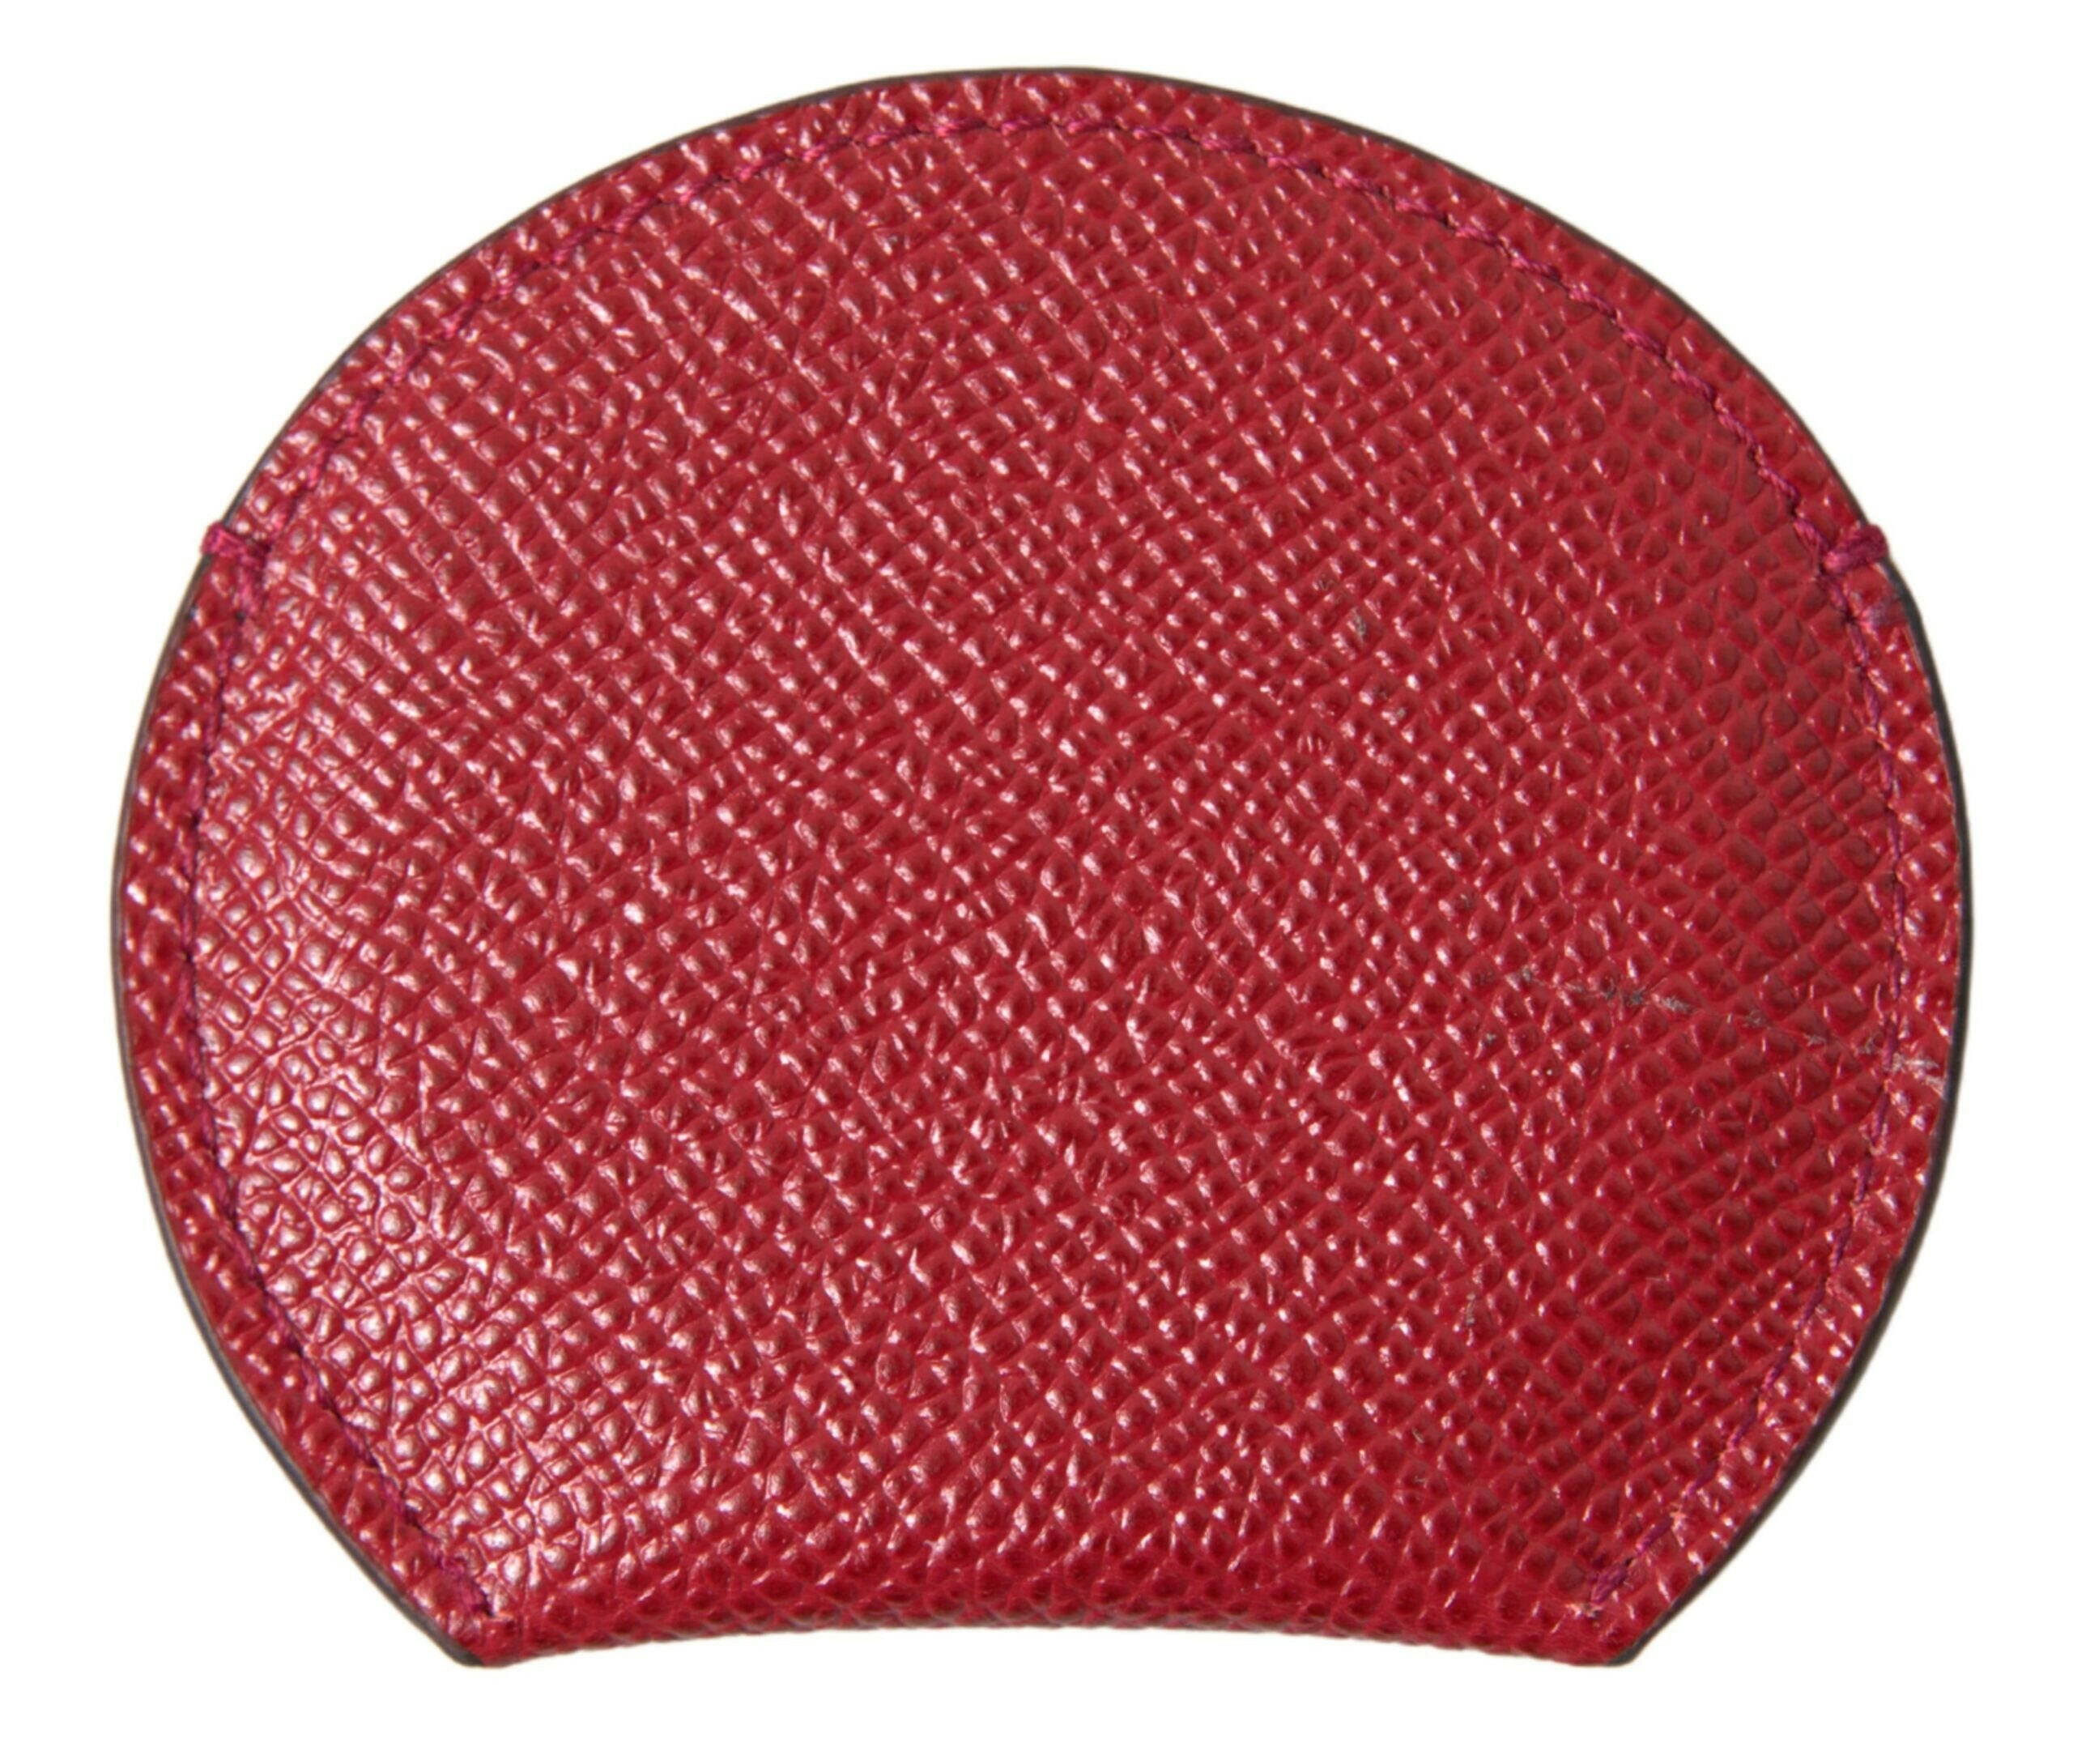 Dolce & Gabbana Red Calfskin Leather Round Hand Mirror Holder - GENUINE AUTHENTIC BRAND LLC  